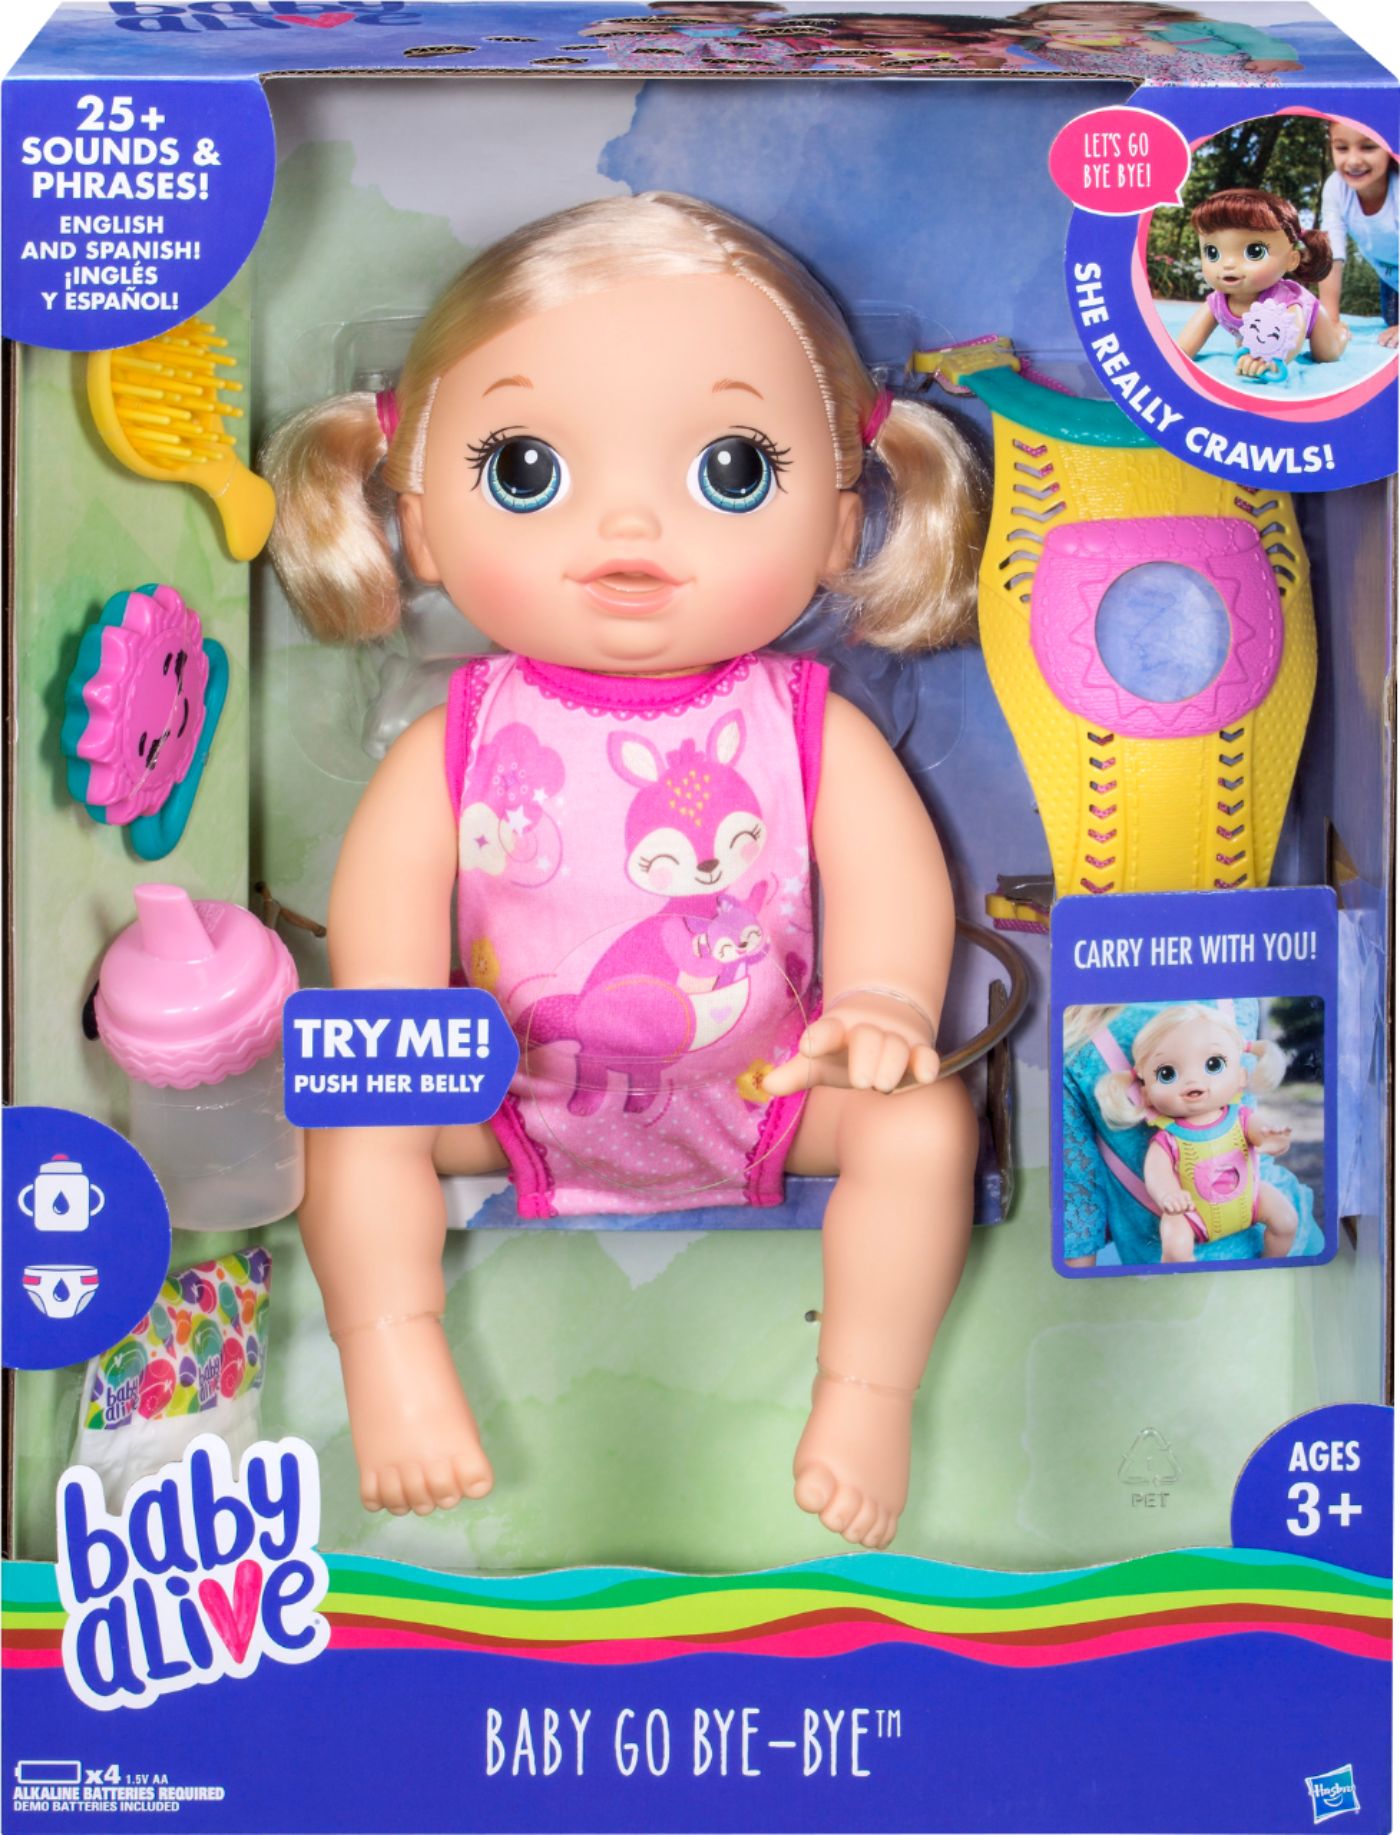 Baby Alive Baby Go Bye-Bye Baby Doll C26880000 - Best Buy